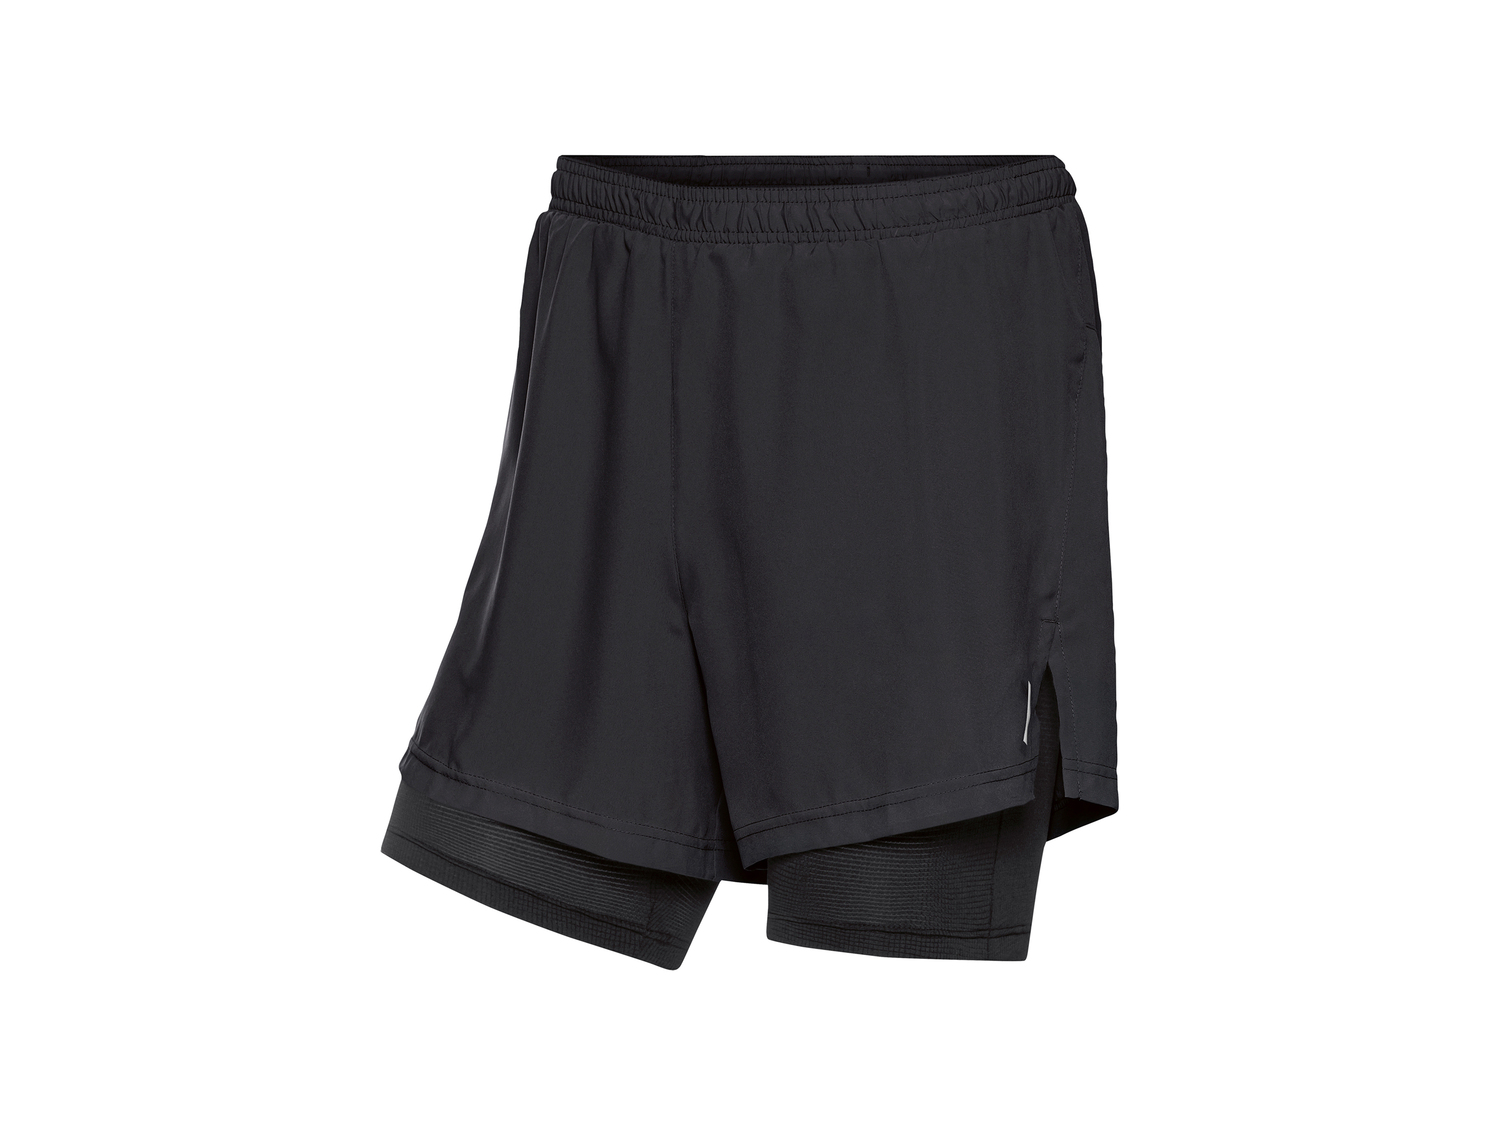 Shorts sportivi da uomo Crivit, prezzo 7.99 &#8364; 
Misure: M-XL 
- Con dettagli ...